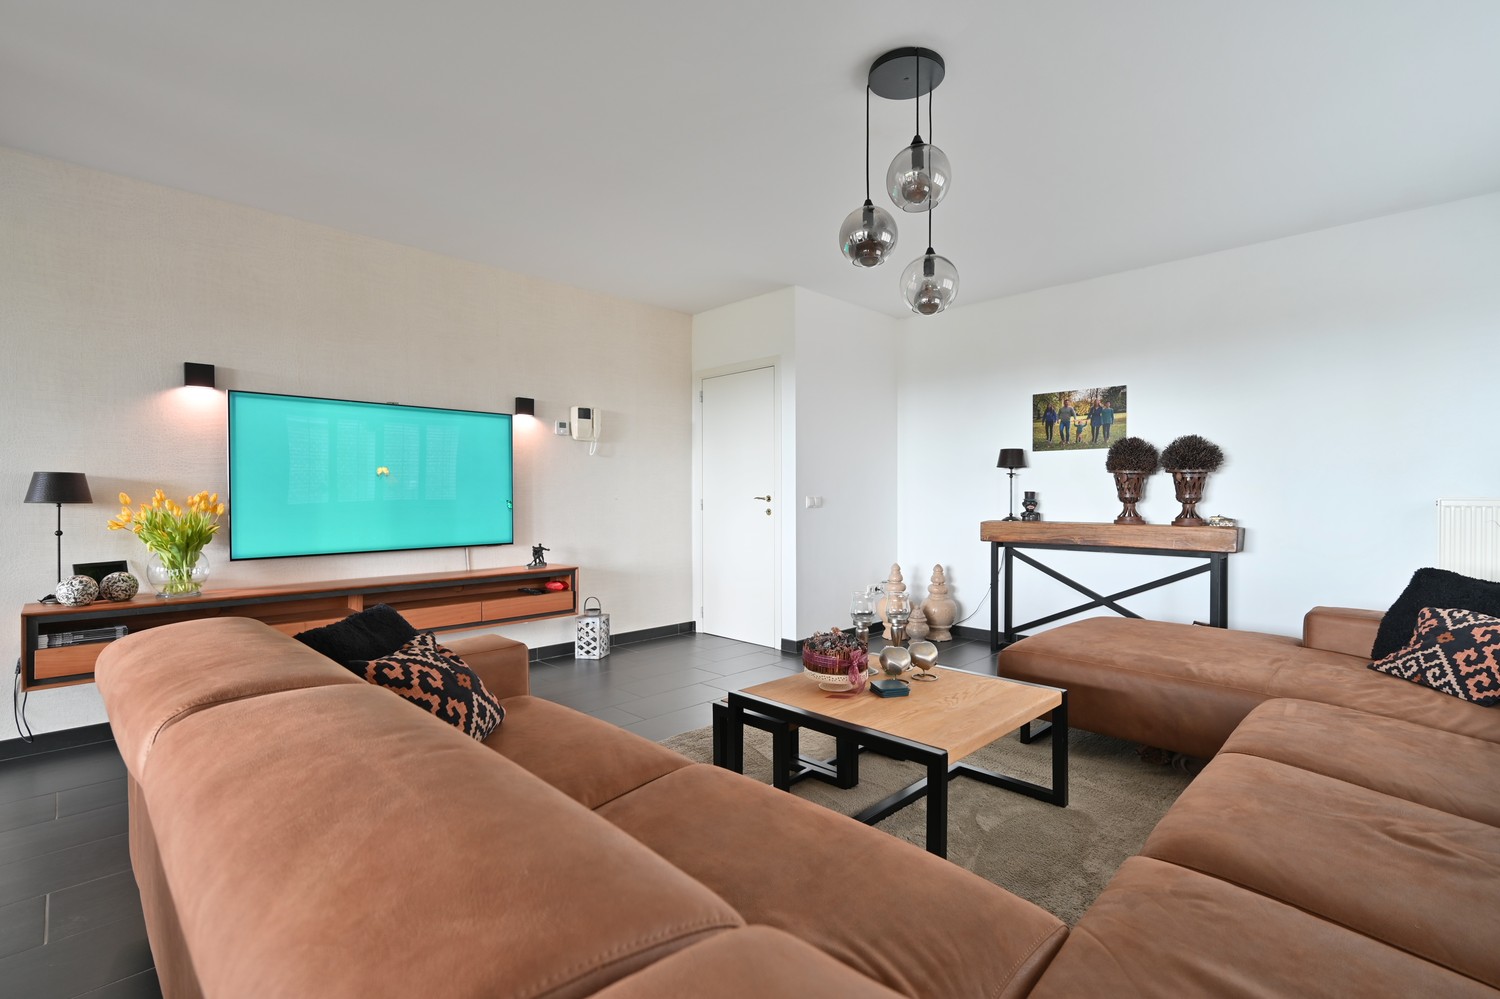 Modern, gelijkvloers hoekappartement van 125 m² met riant zonneterras en garagebox, rustig gelegen in Residentie La Scala te Lanaken-Gellik foto 4